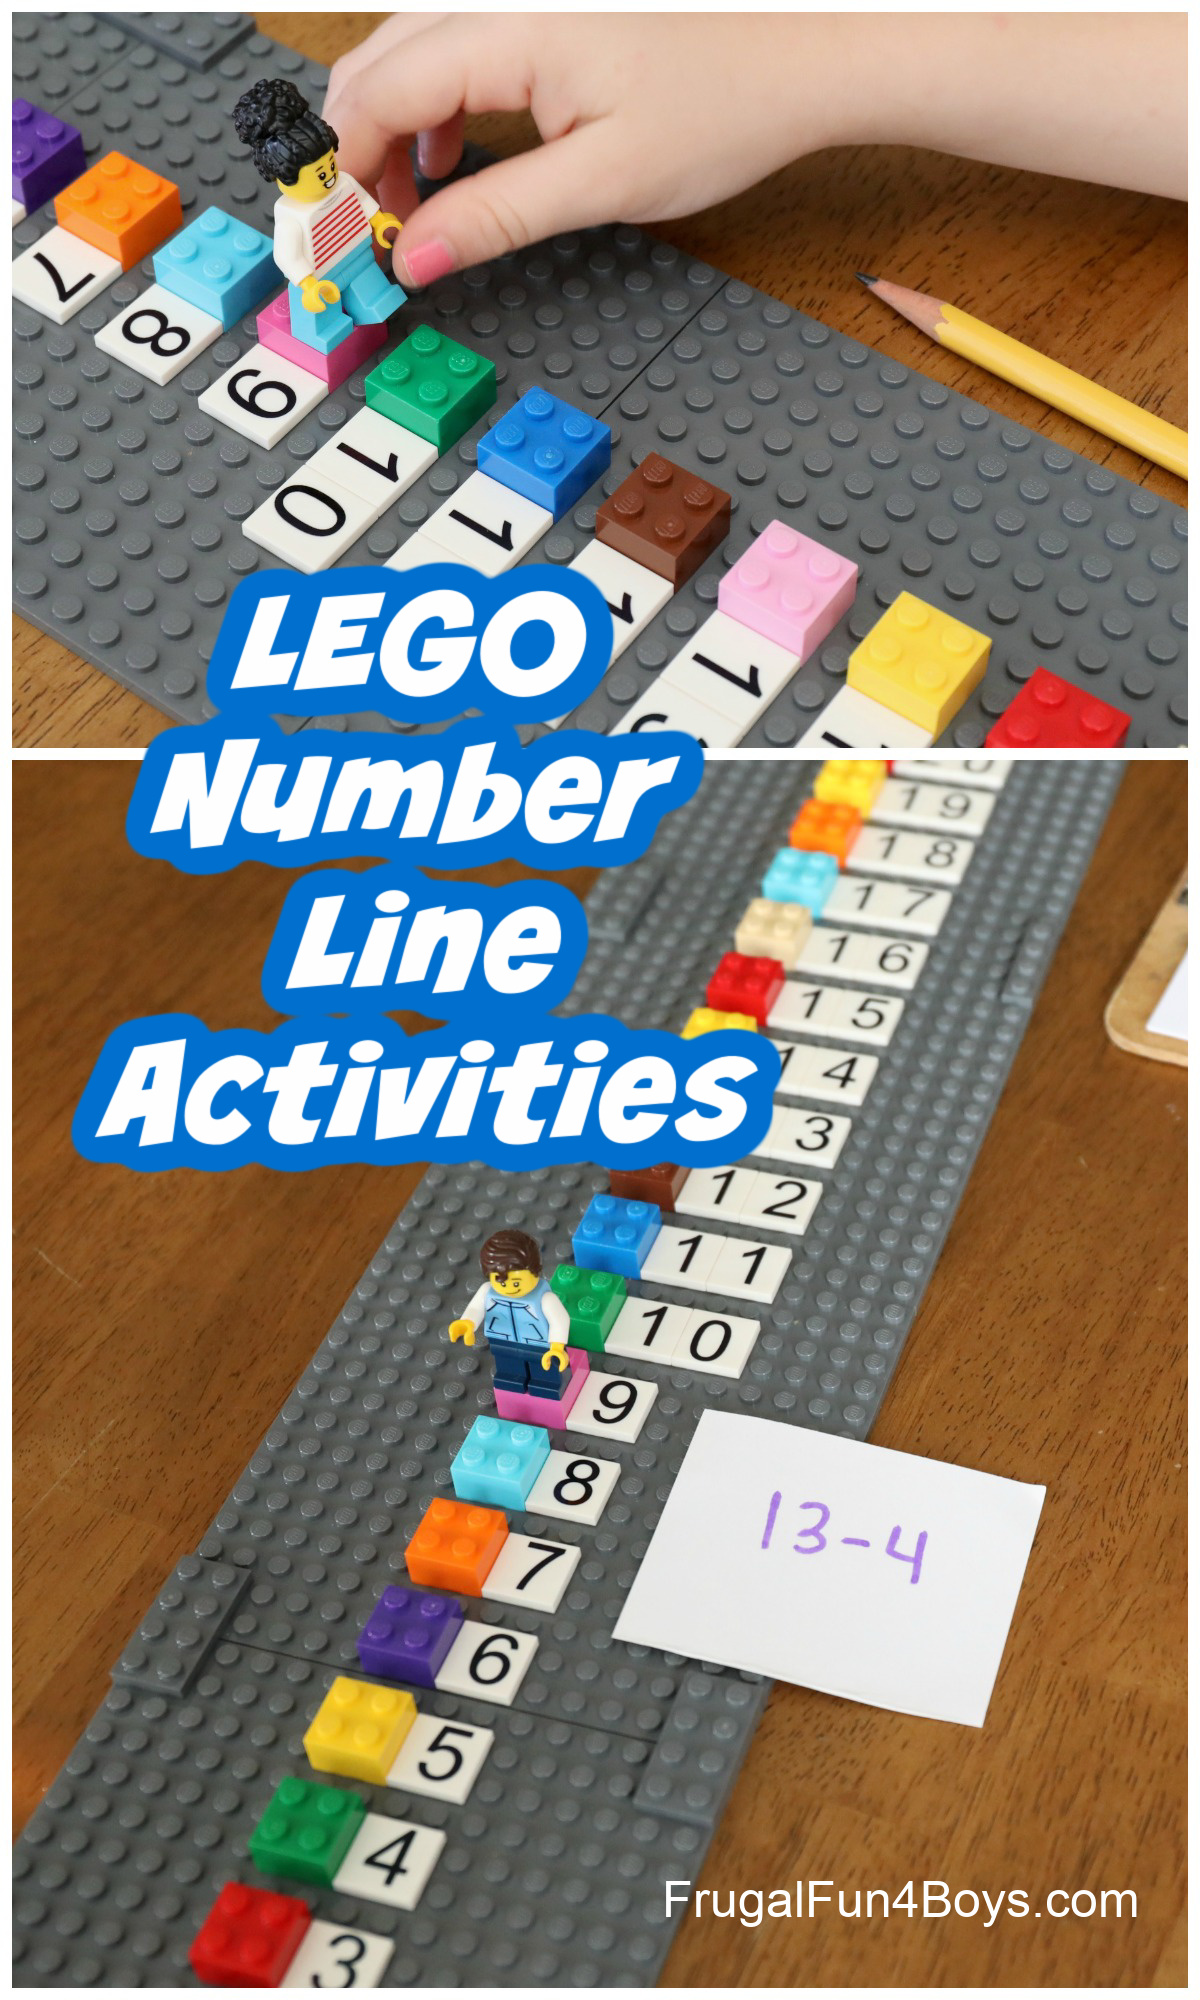 LEGO Number Line Activities